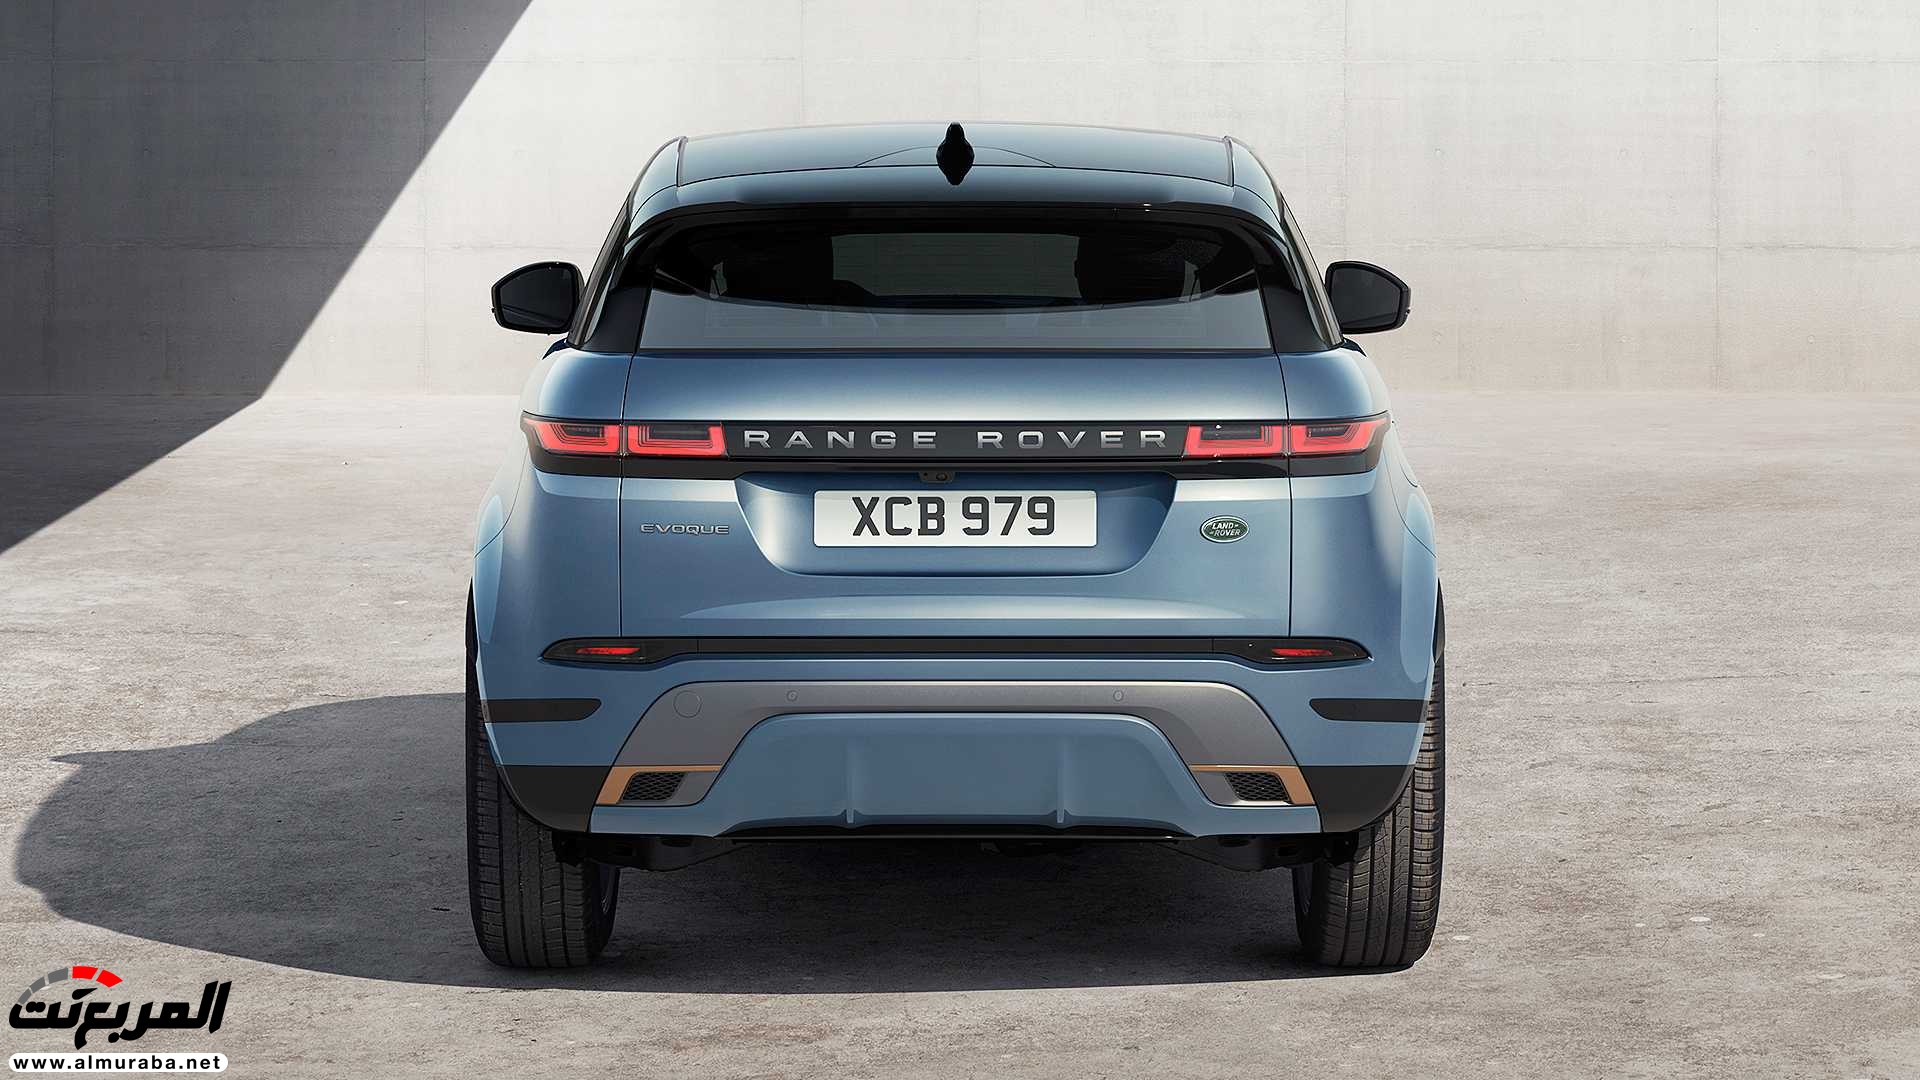 اهم 7 معلومات عن رنج روفر ايفوك 2020 الجديدة كلياً Range Rover Evoque 392